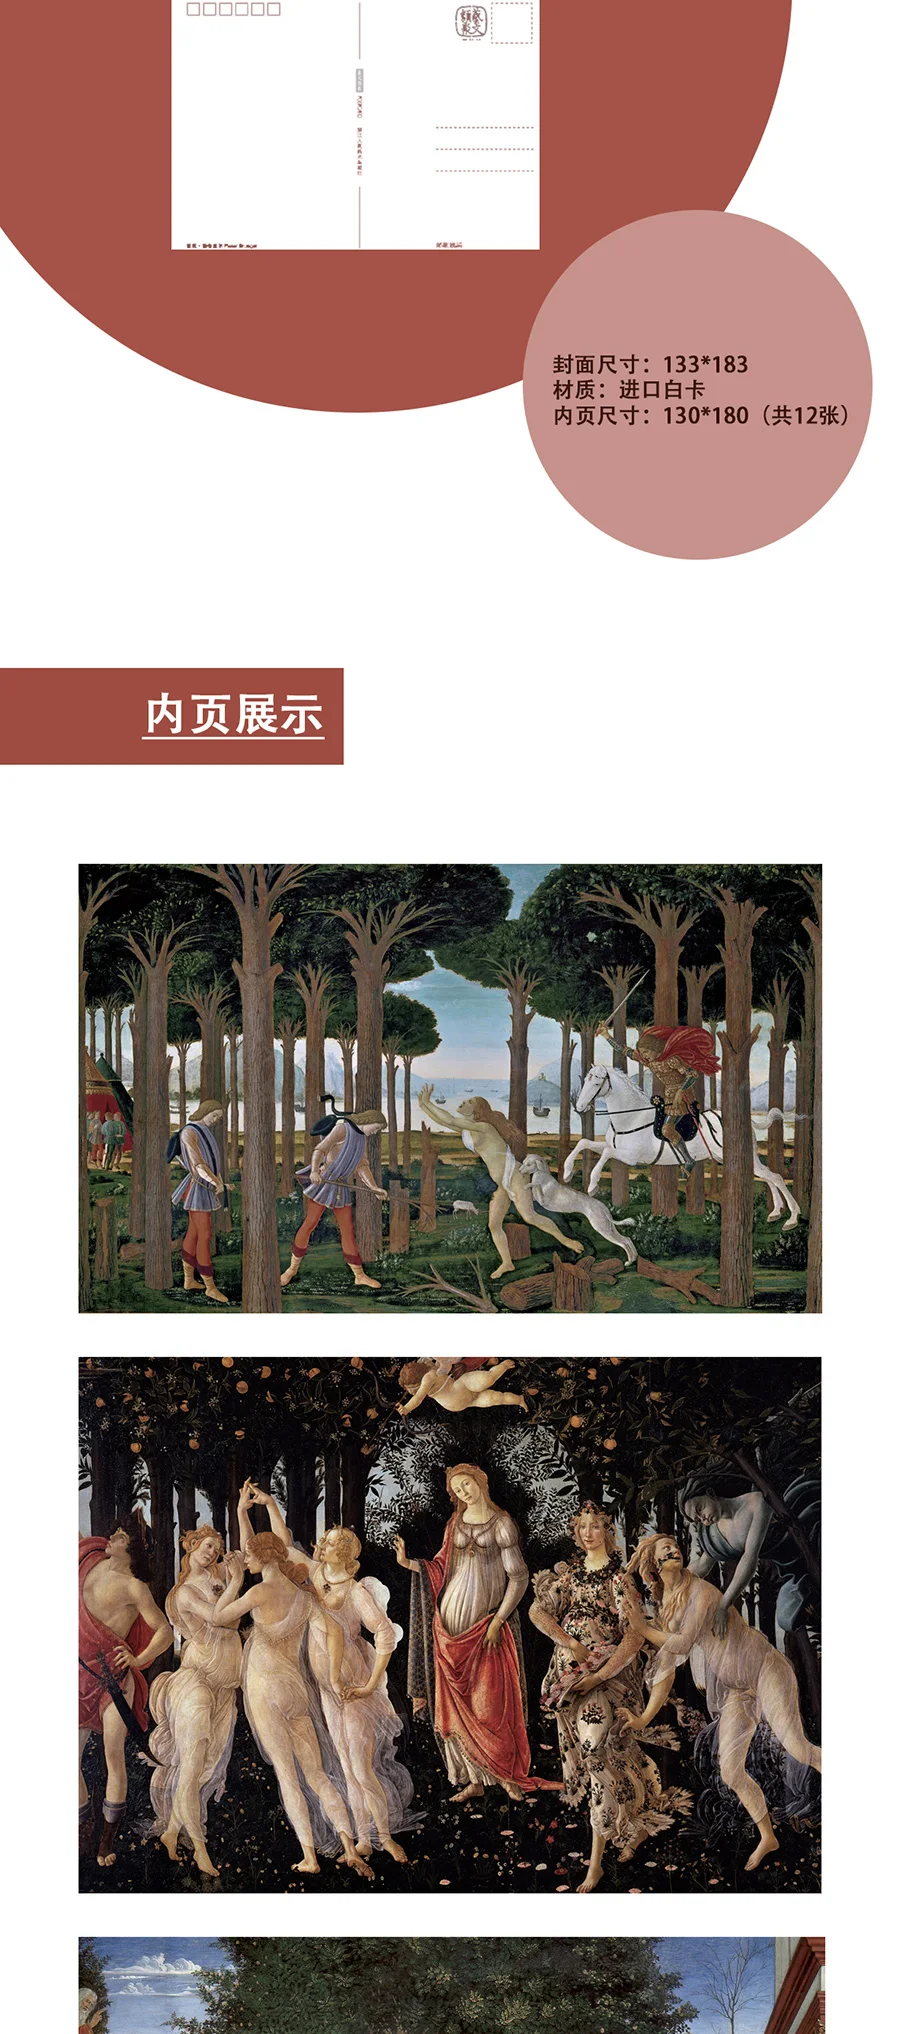 12 листов/набор Sandro Botticelli серия открытка поздравительная открытка картина маслом Художественный альбом Ретро иллюстрация набор